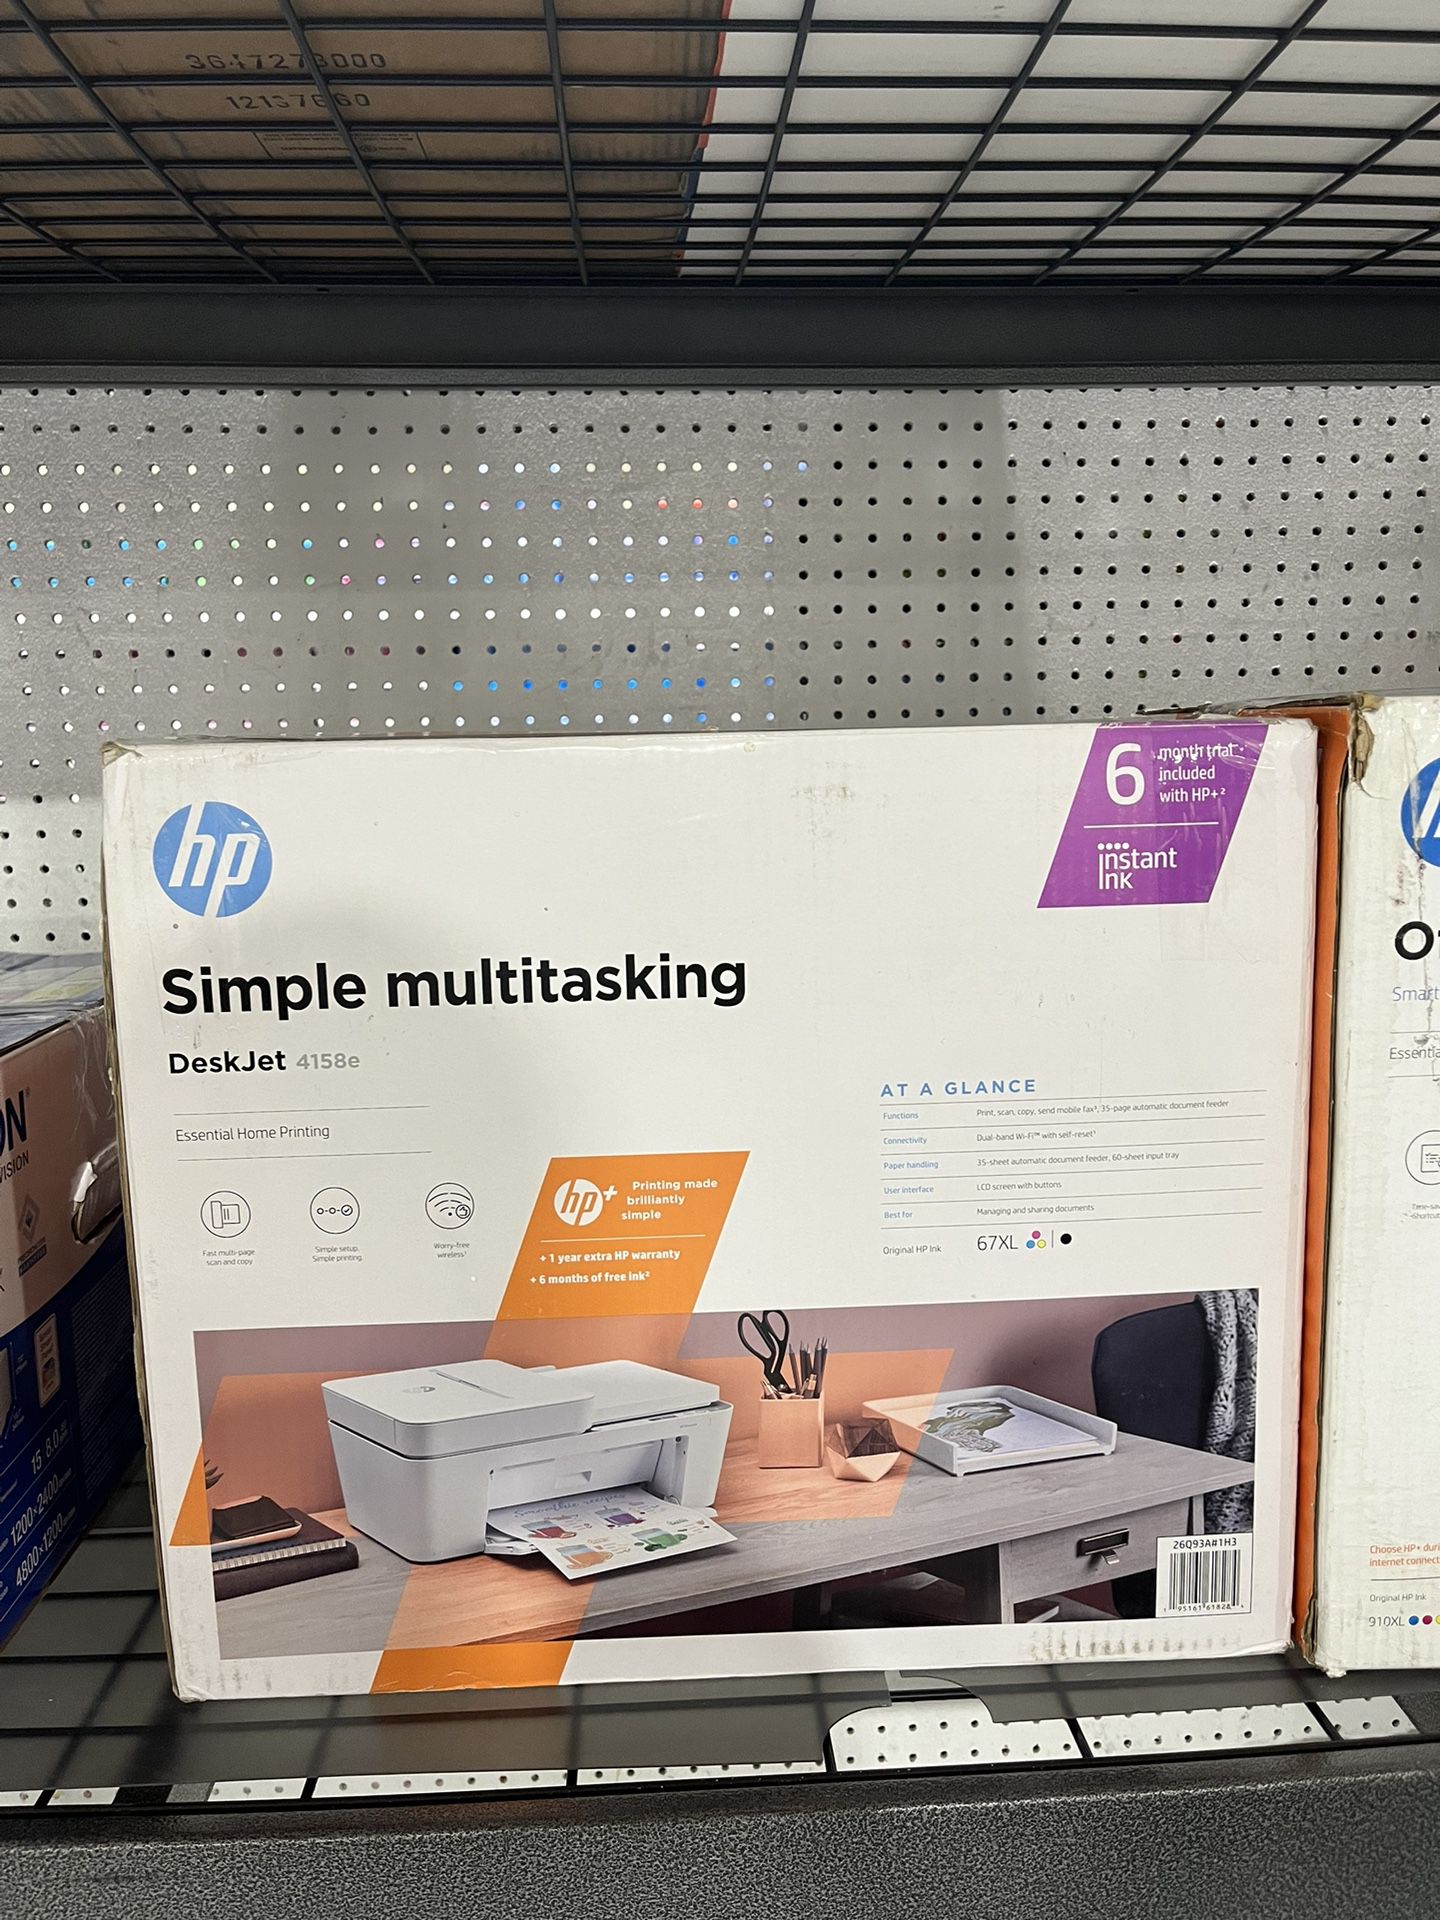 hp Simple multitasking DeskJet 4158e $49.99